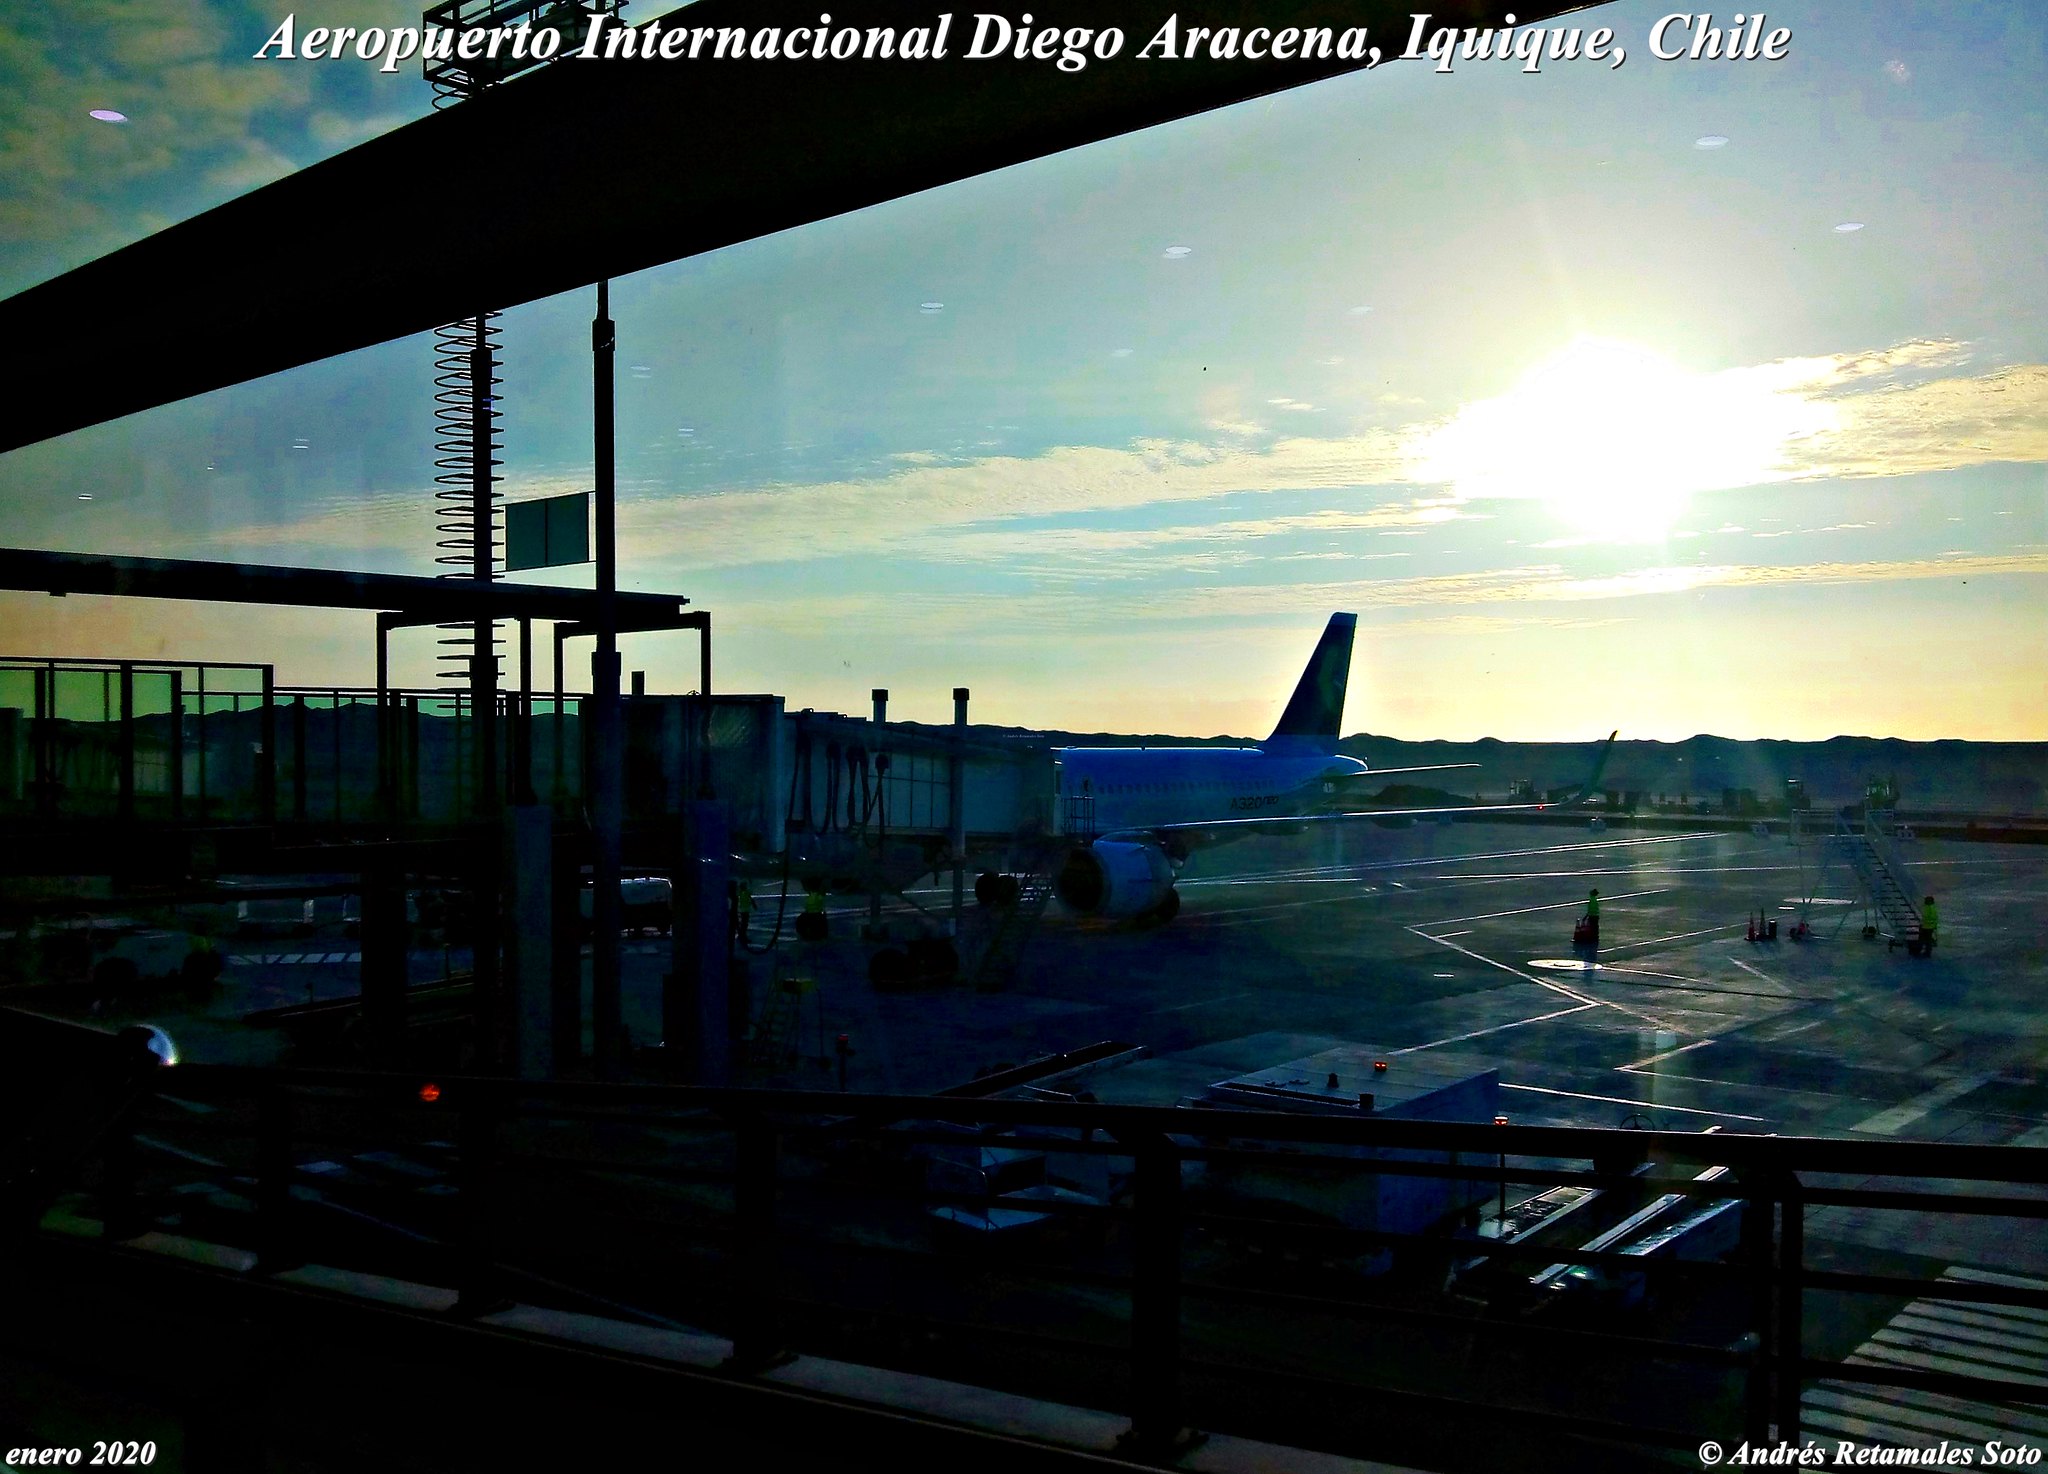 Aeropuerto Internacional Diego Aracena, Iquique, Chile, enero 2020. 🆑✈️ Andrés Retamales